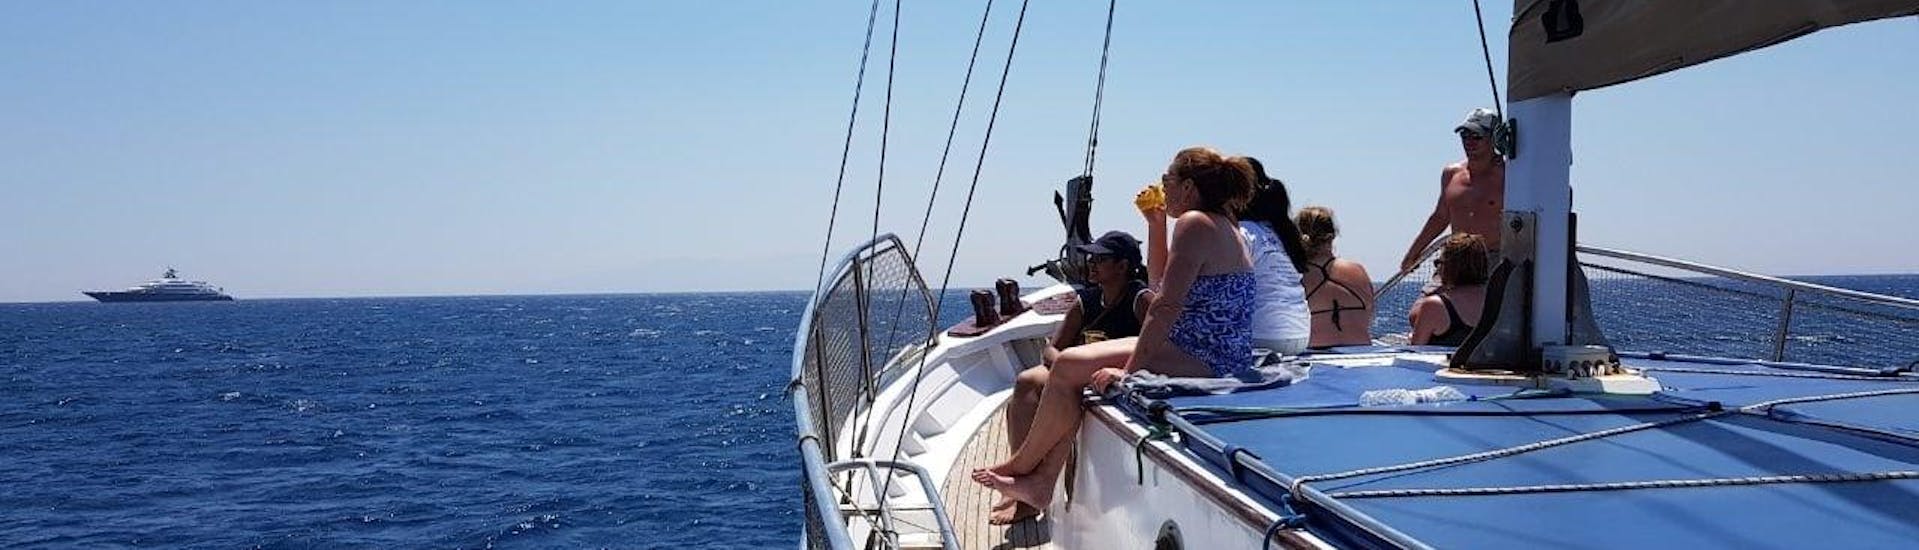 Menschen auf dem Boot von Mykonos Cruises während einer Bootstour.